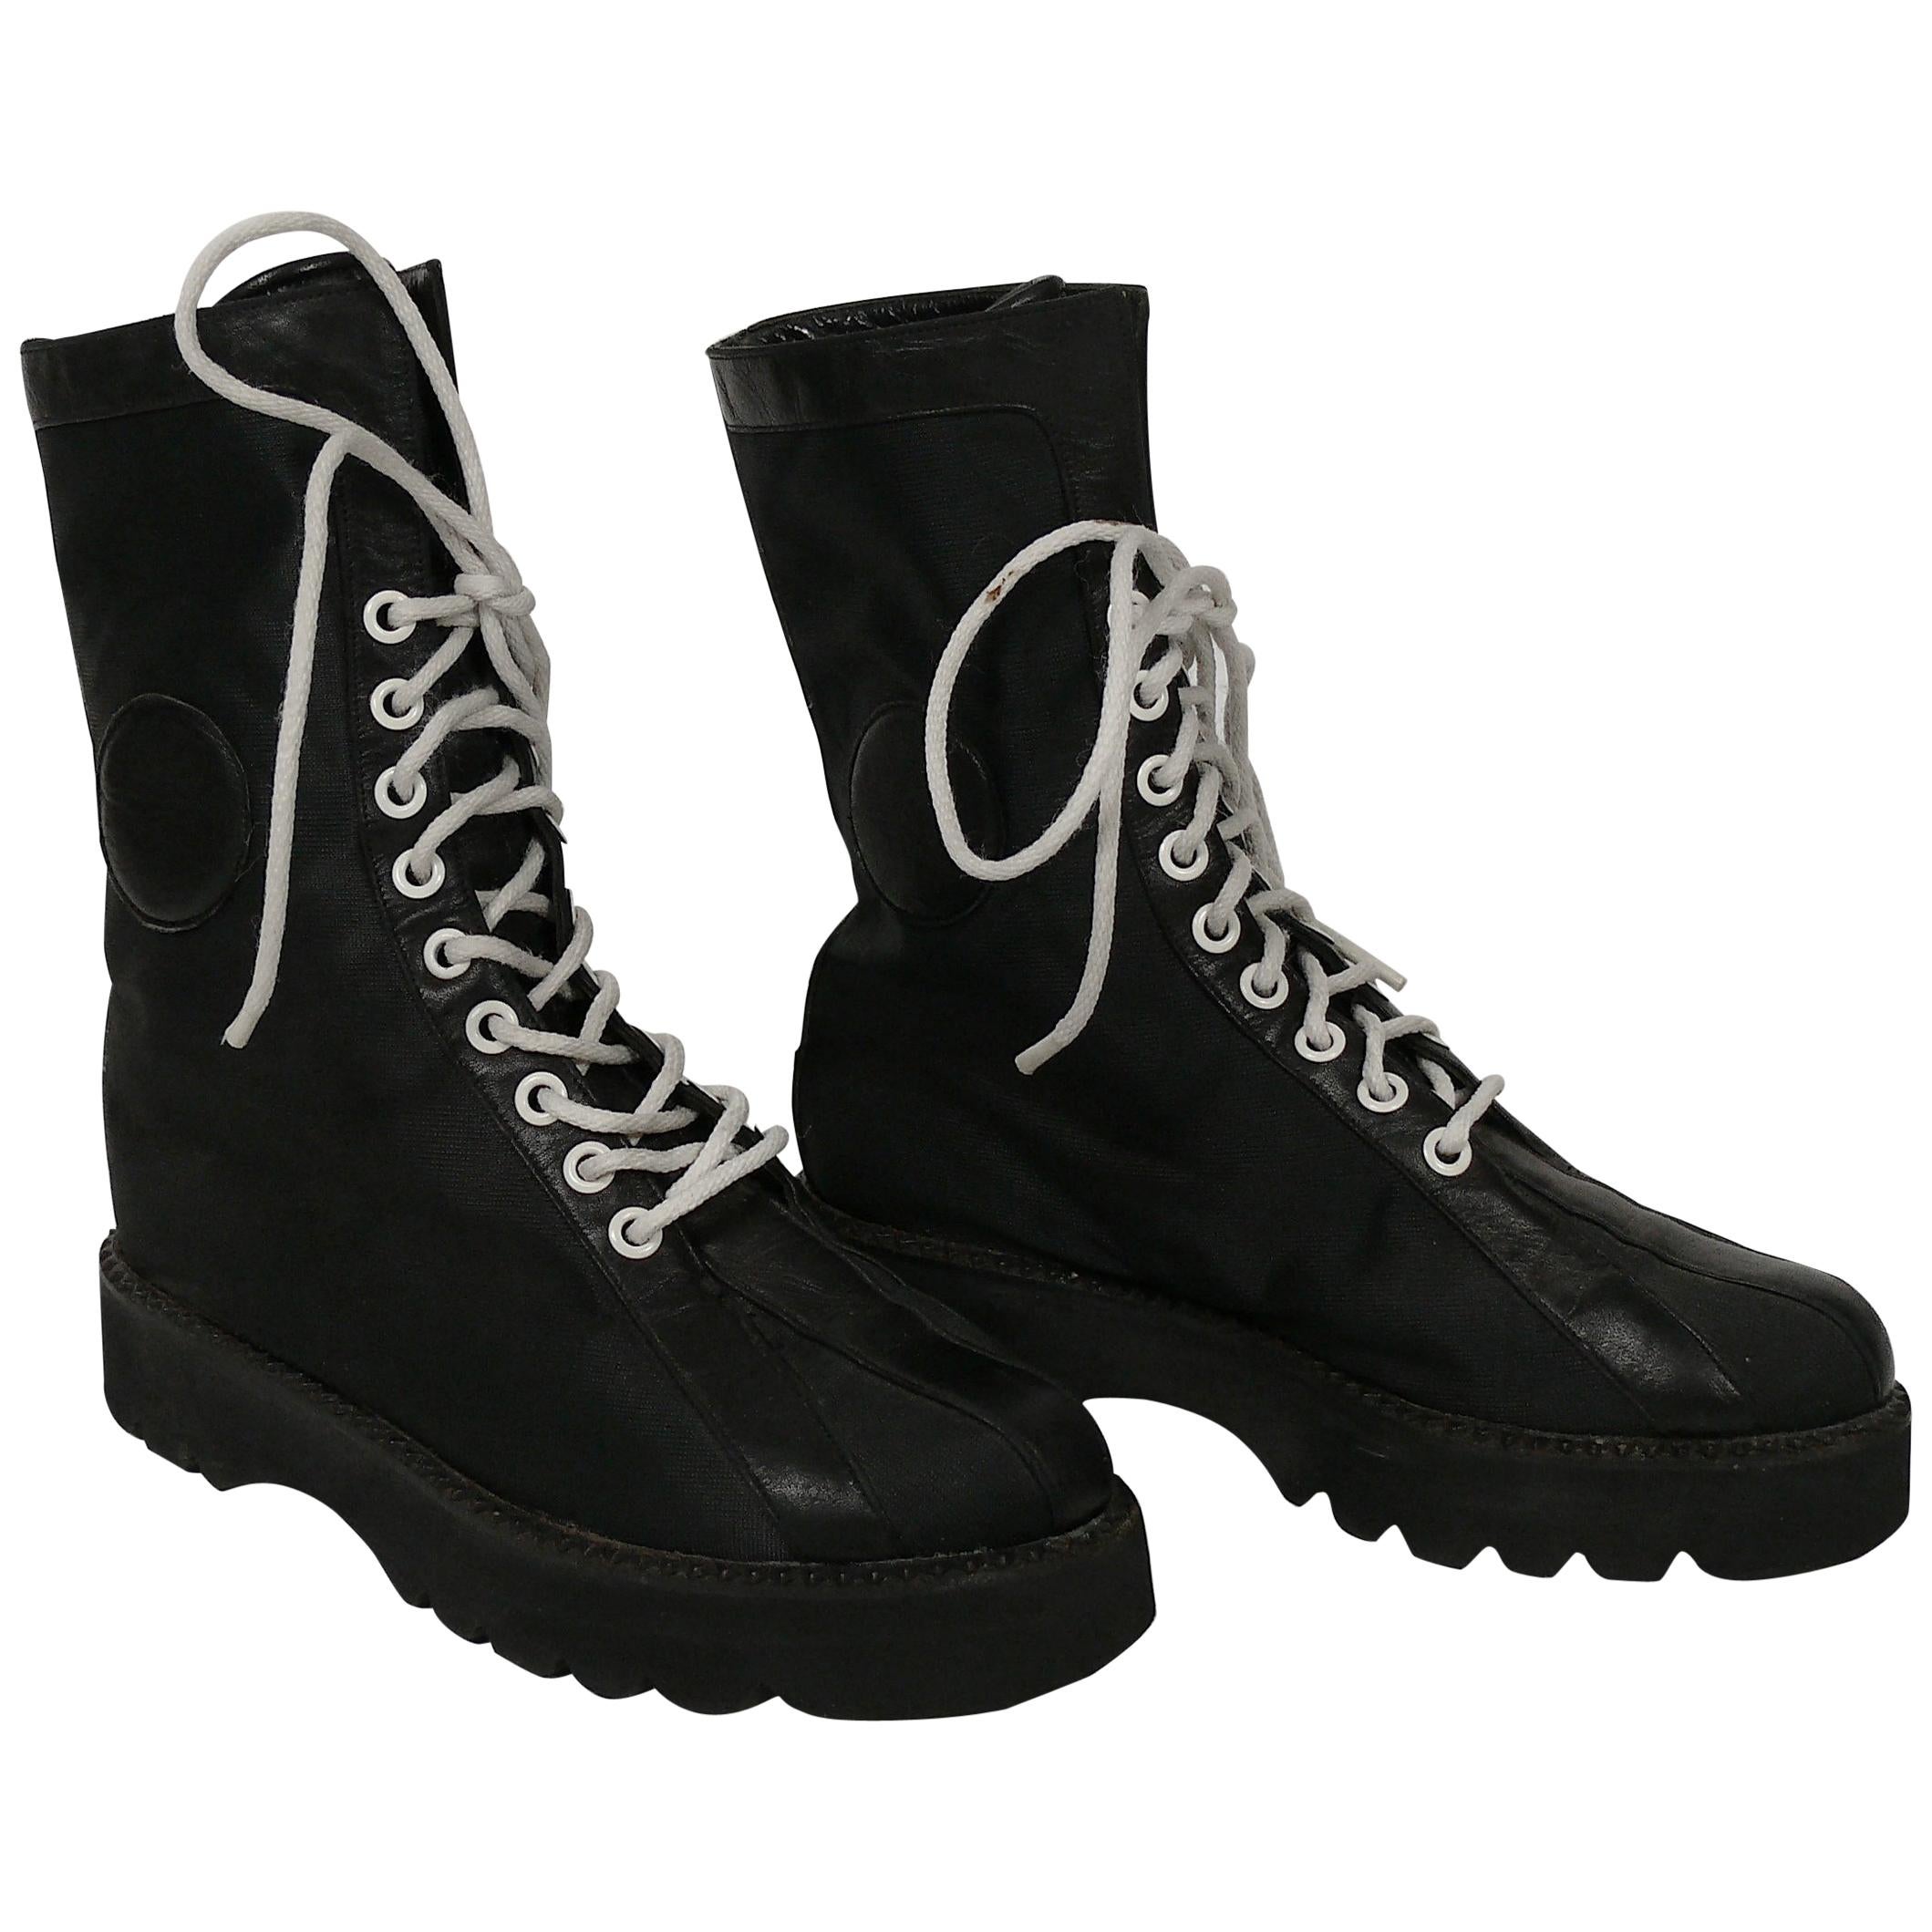 Vivienne Westwood stud-embellished Combat Boots - Black